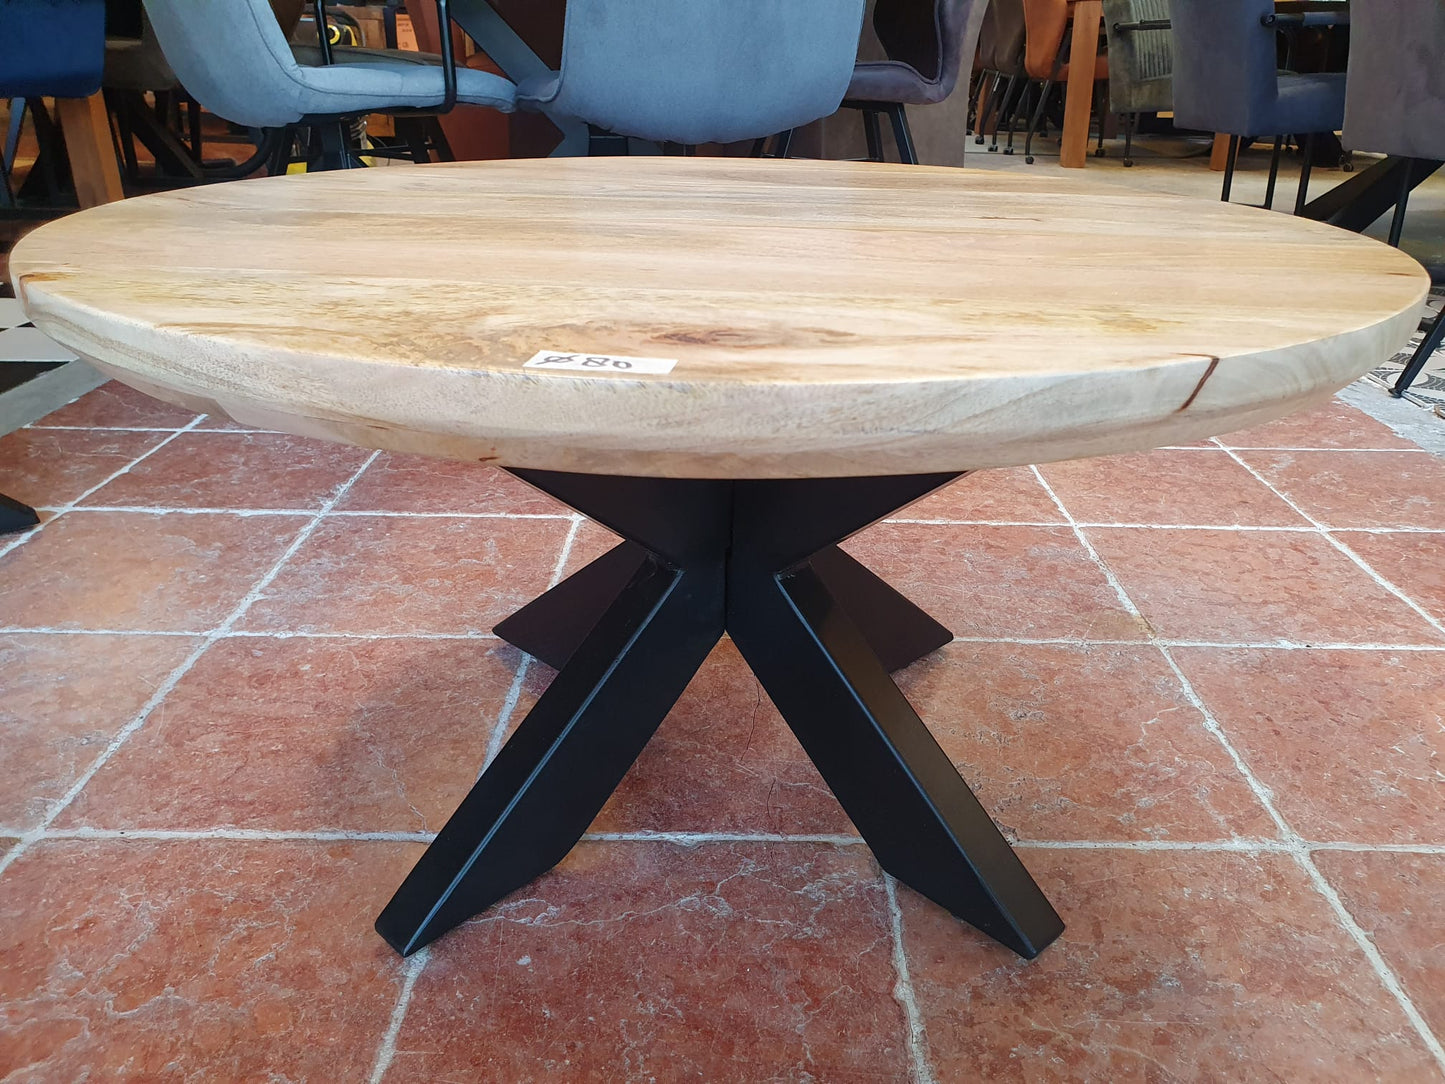 Gladde ronde mangohouten salontafel van 90cm doorsnee met zwart metalen matrix/spinpoot